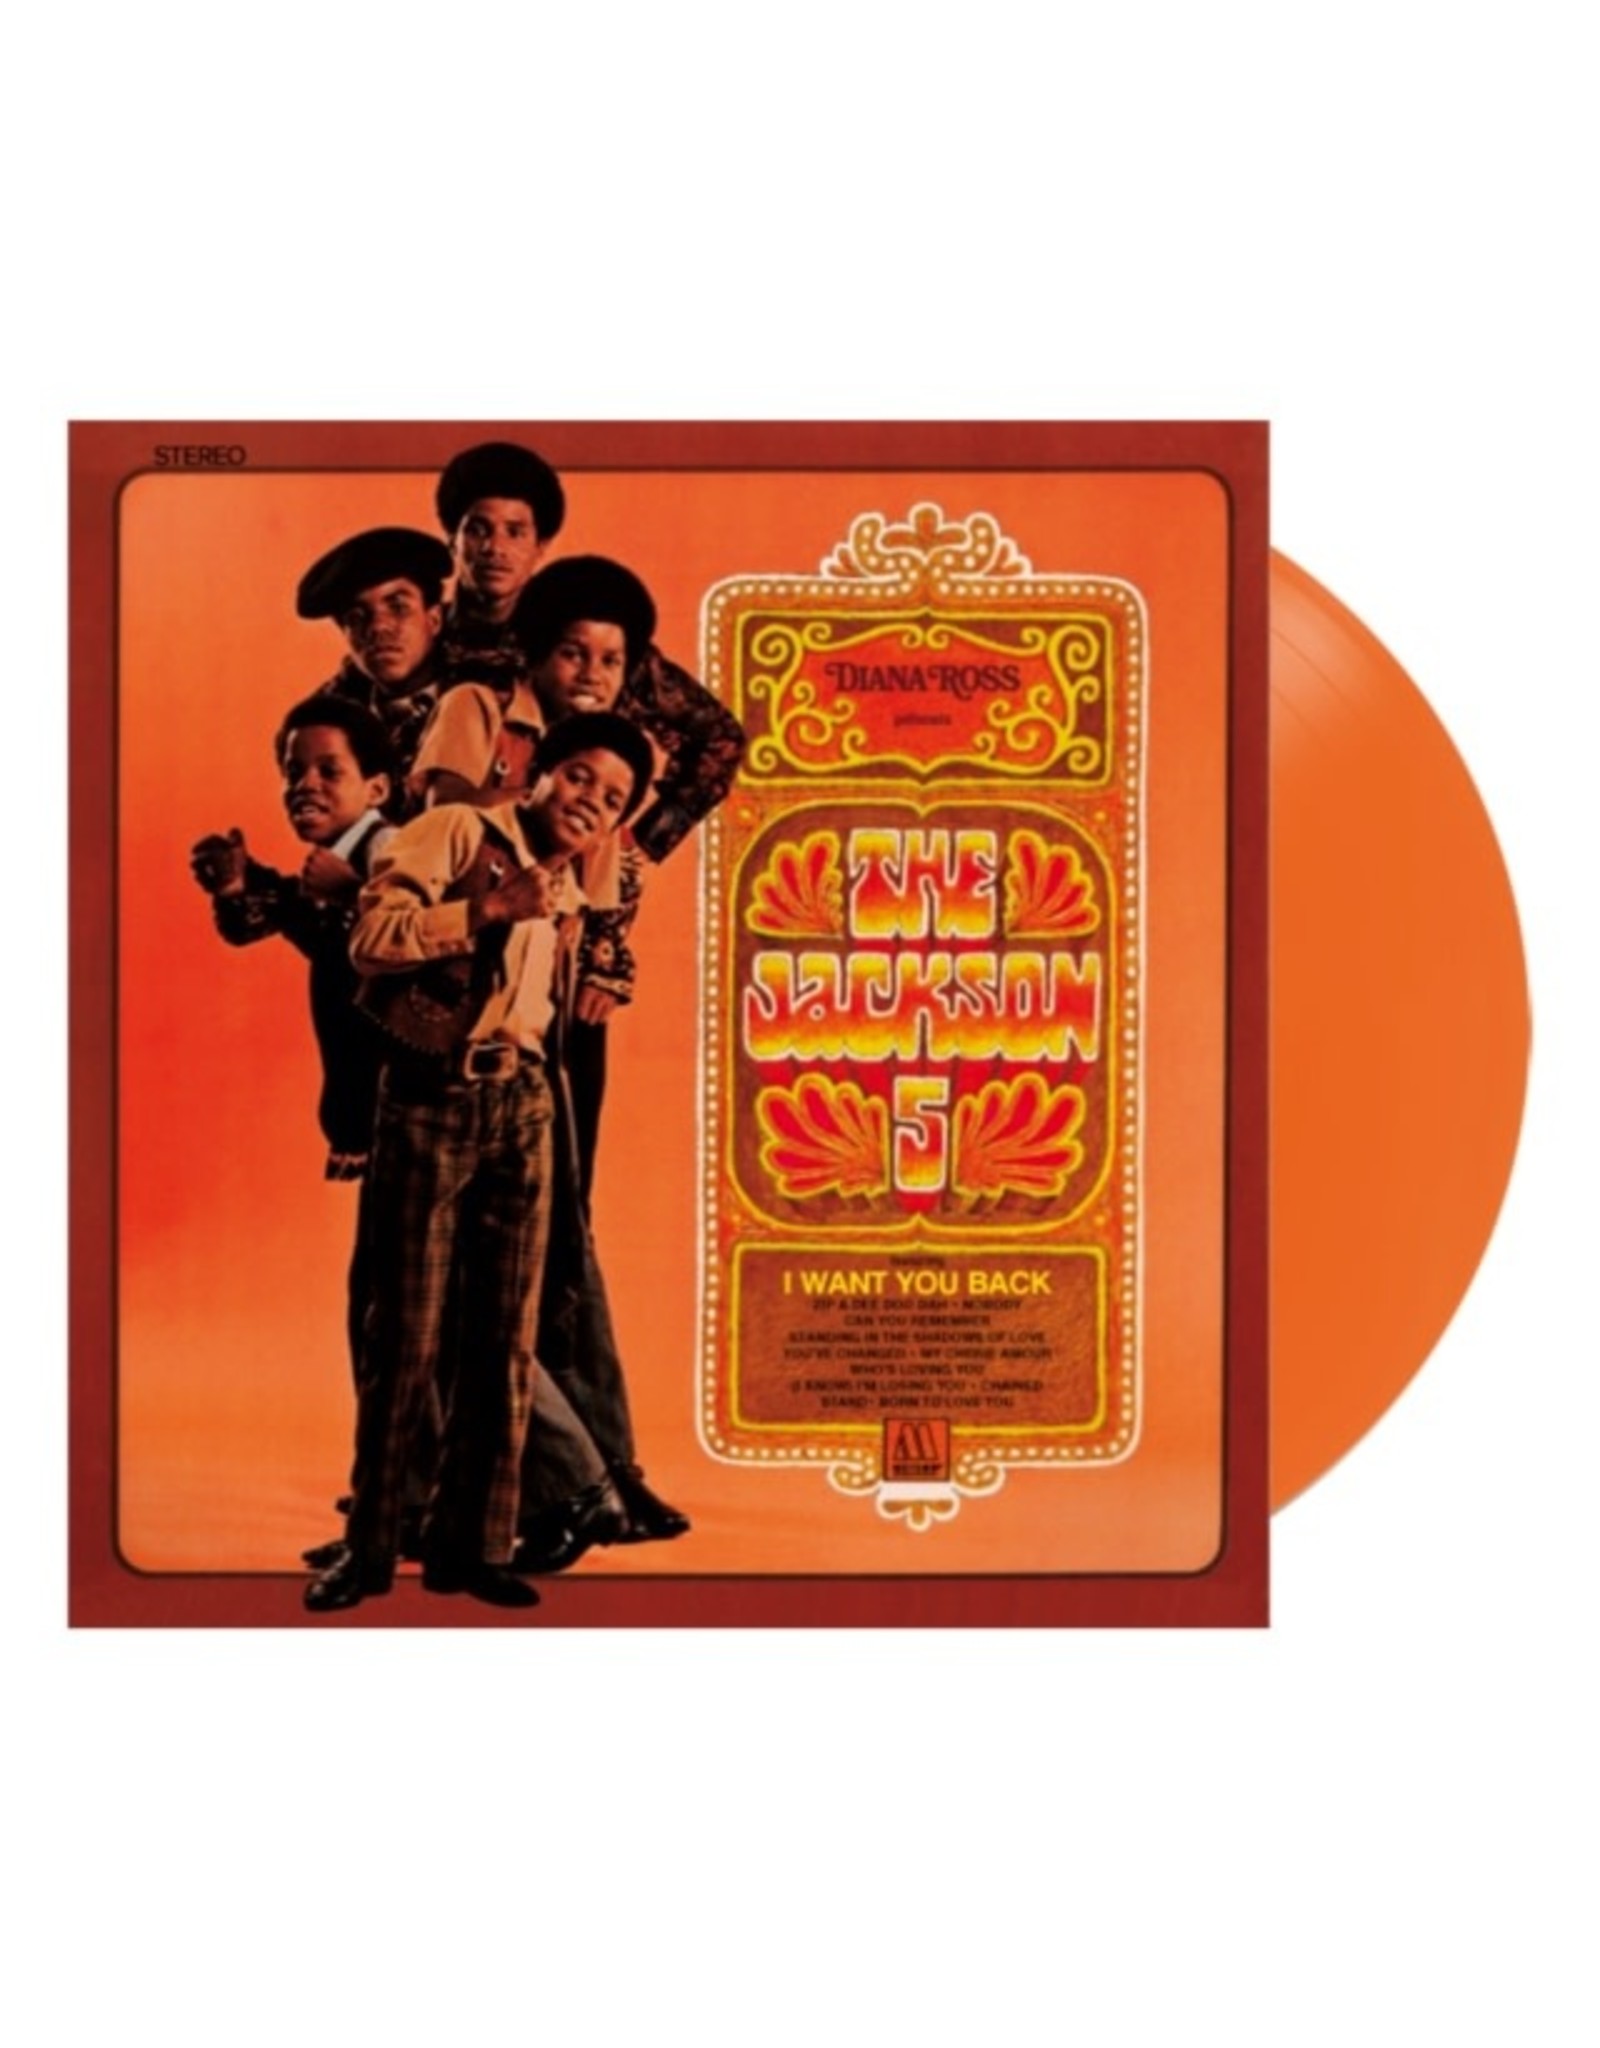 New Vinyl The Jackson 5 - Diana Ross Presents... (Orange) LP